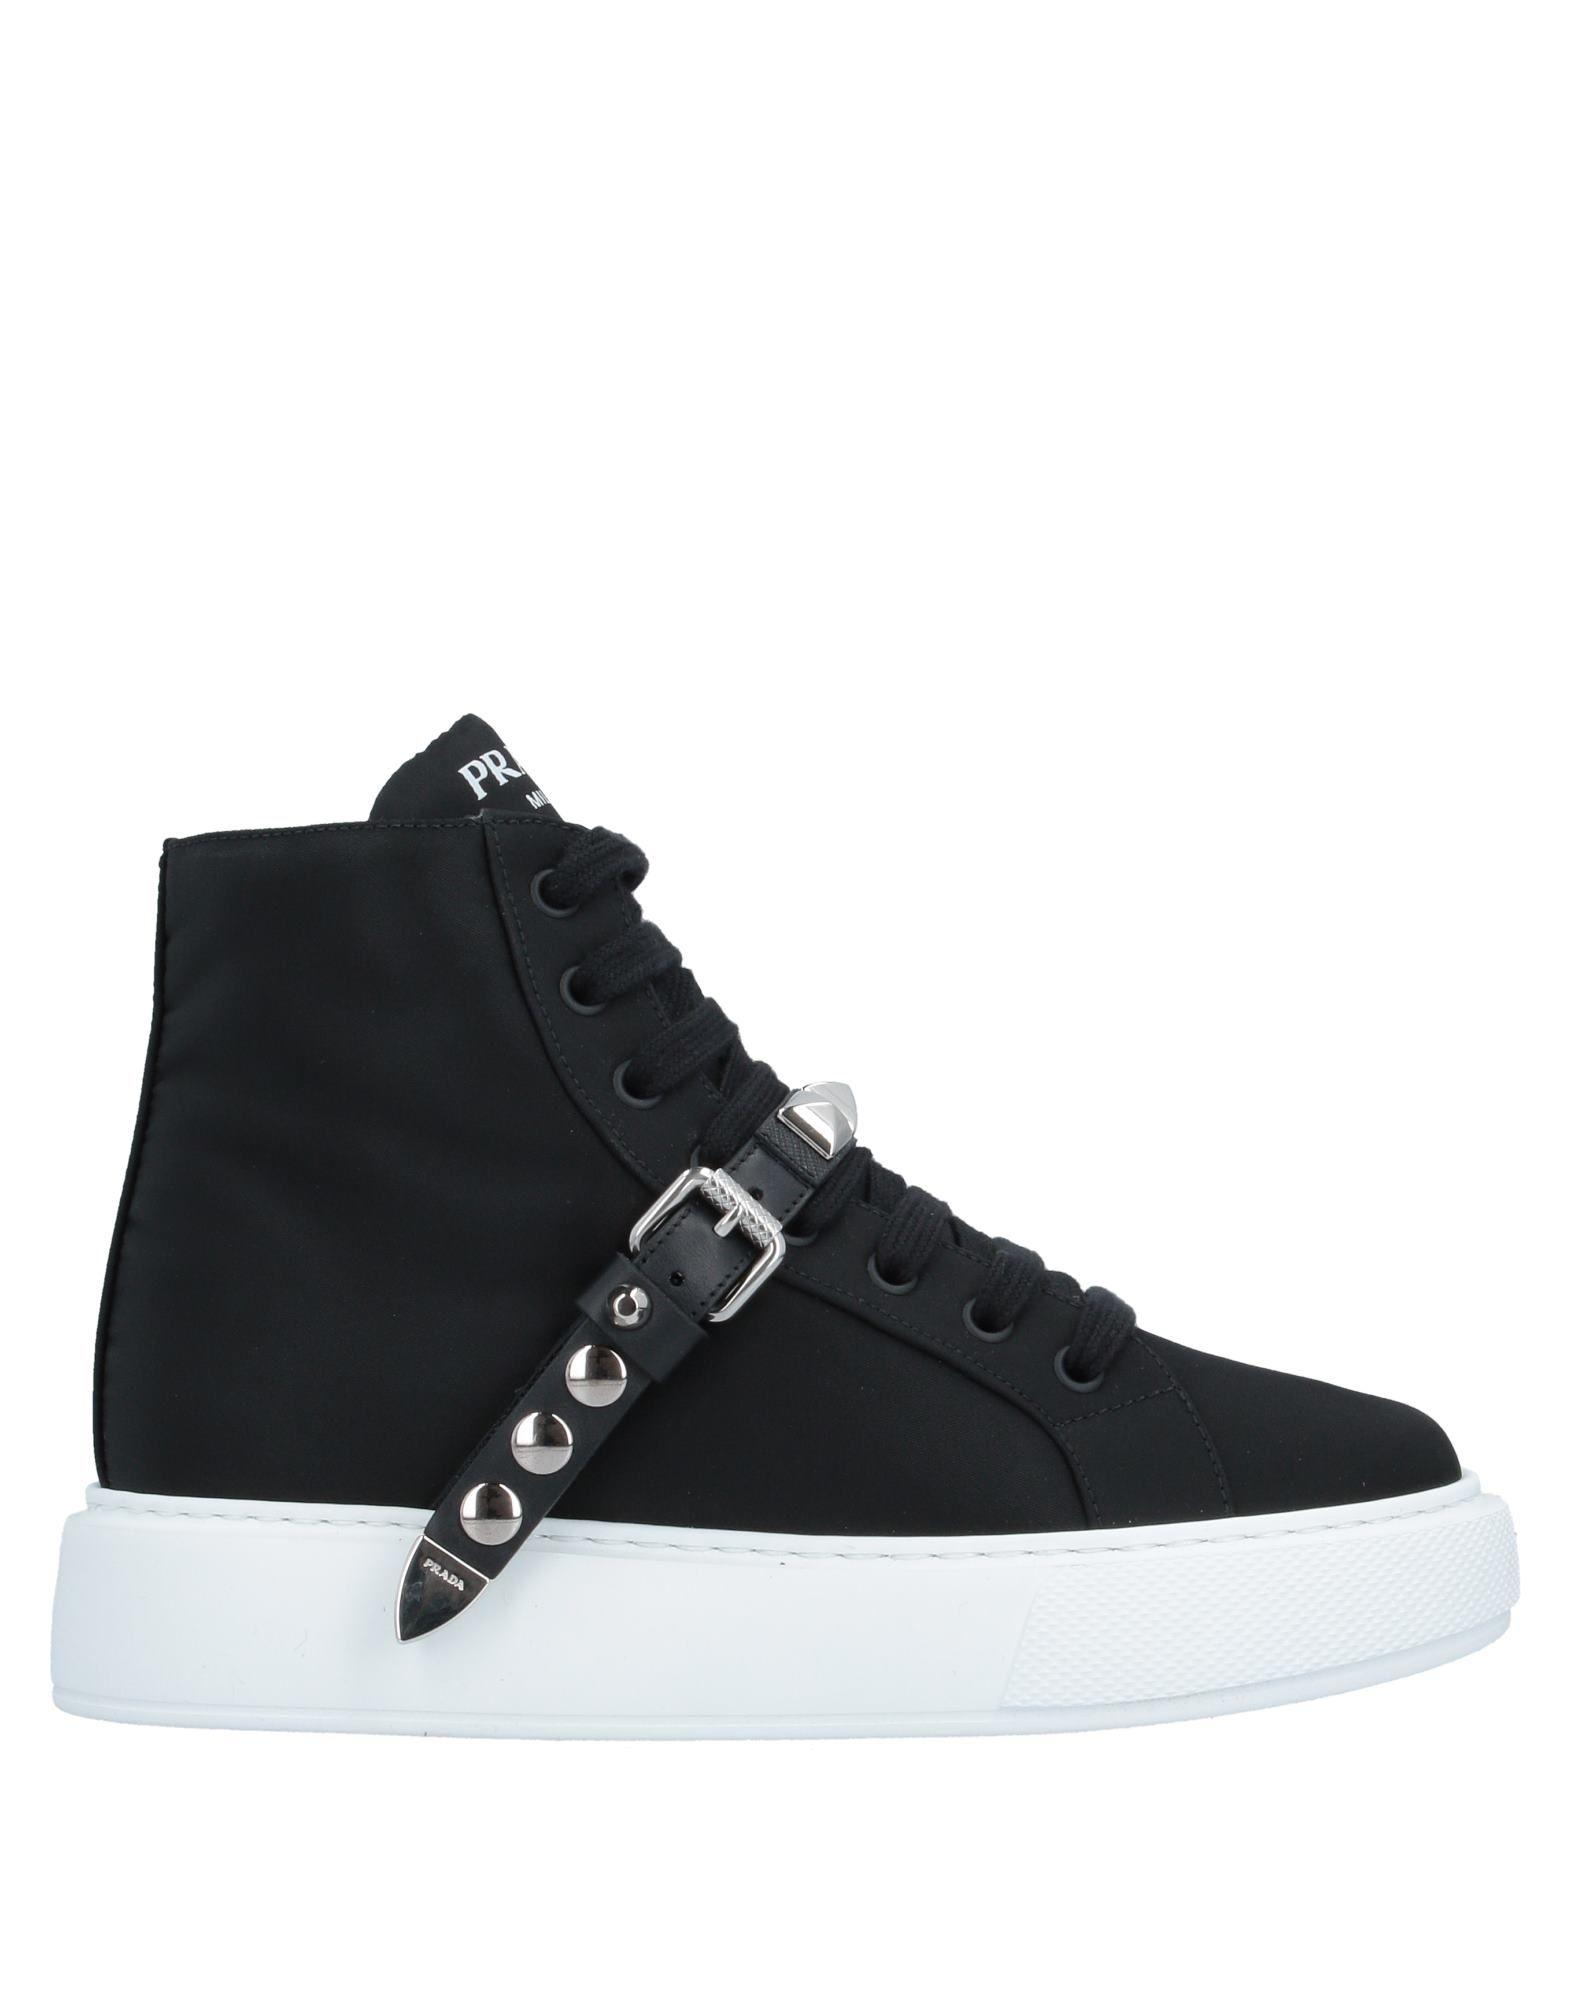 Prada Leather High-tops & Sneakers in Black - Lyst